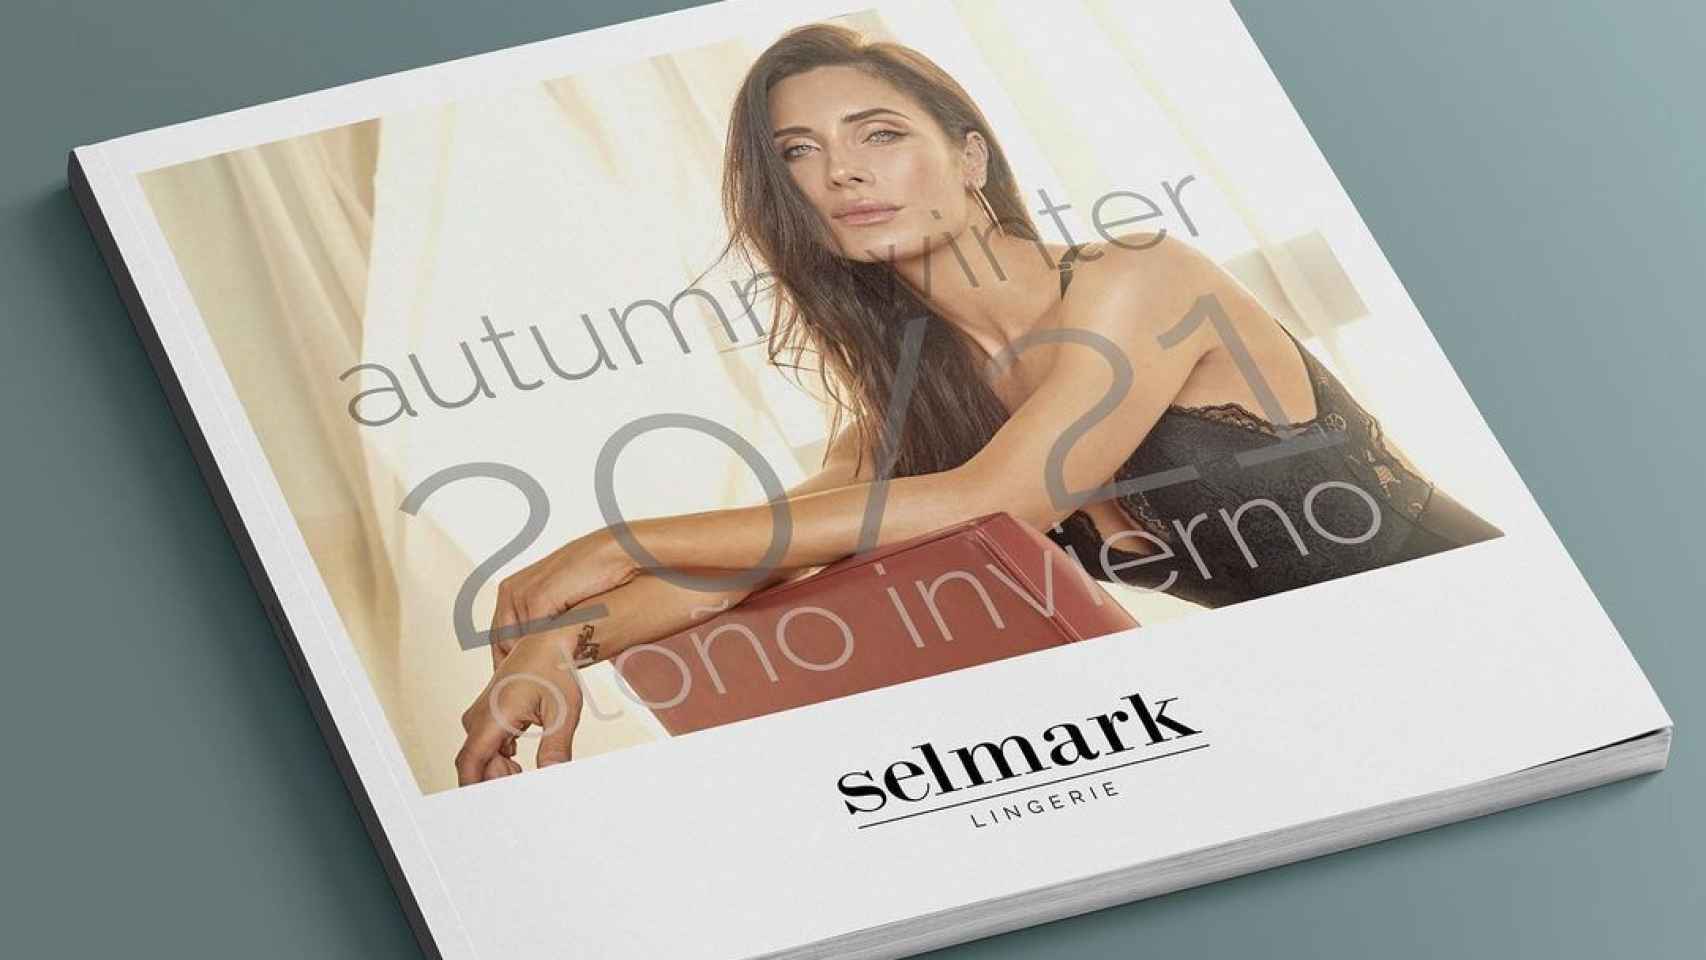 Pilar Rubio, un gran reclamo para el catálogo de Selmark en la temporada otoño/invierno 2021.